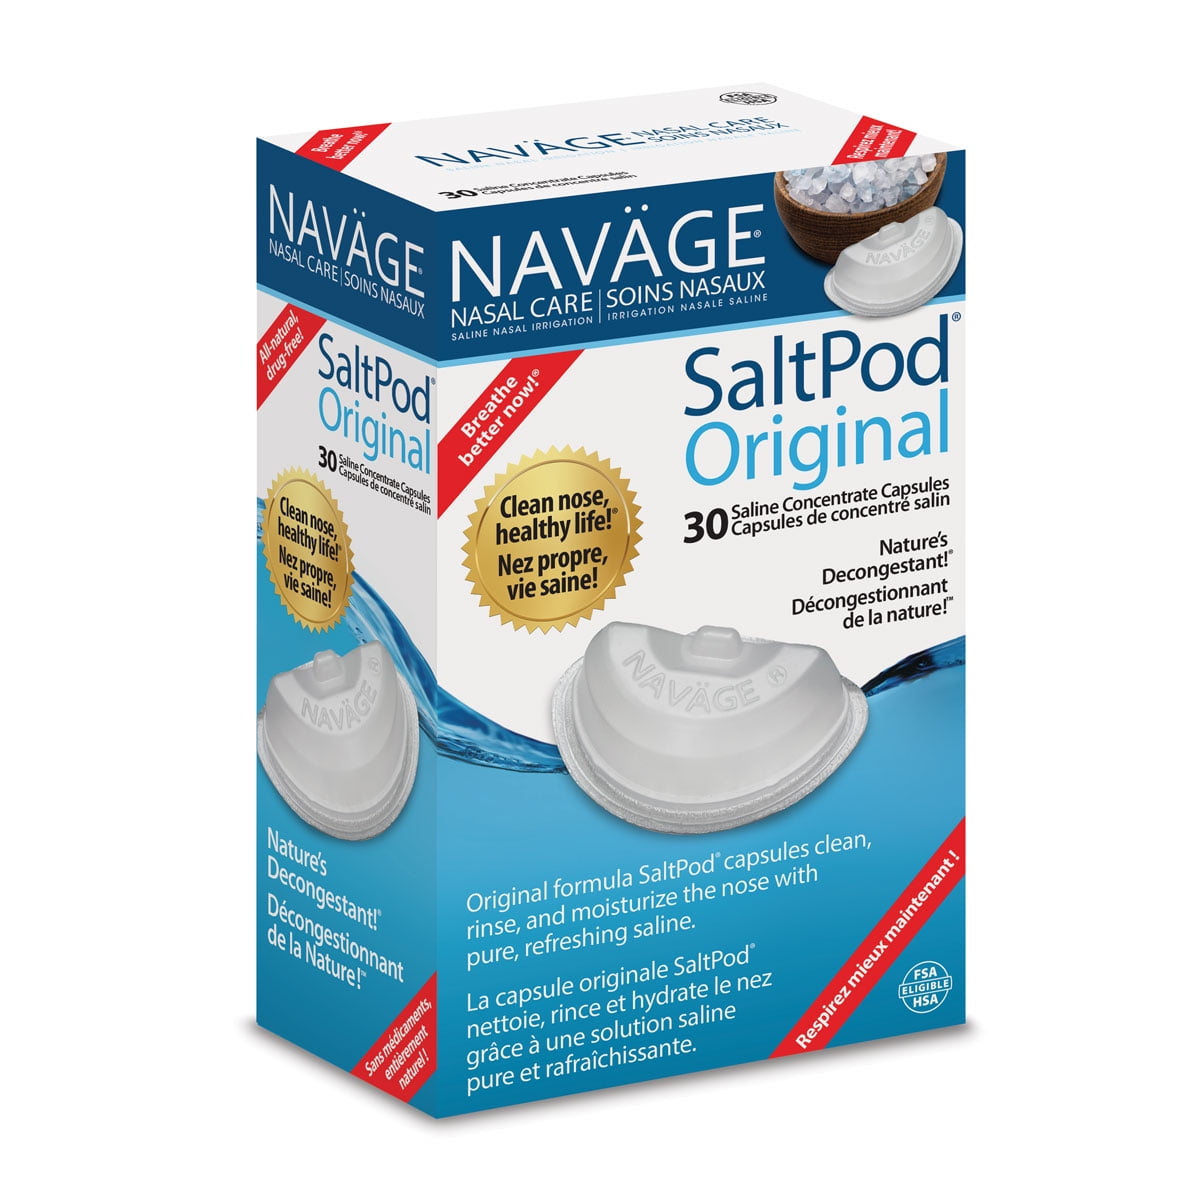 buy-navage-saltpod-30-pack-30-saltpods-online-at-lowest-price-in-ubuy